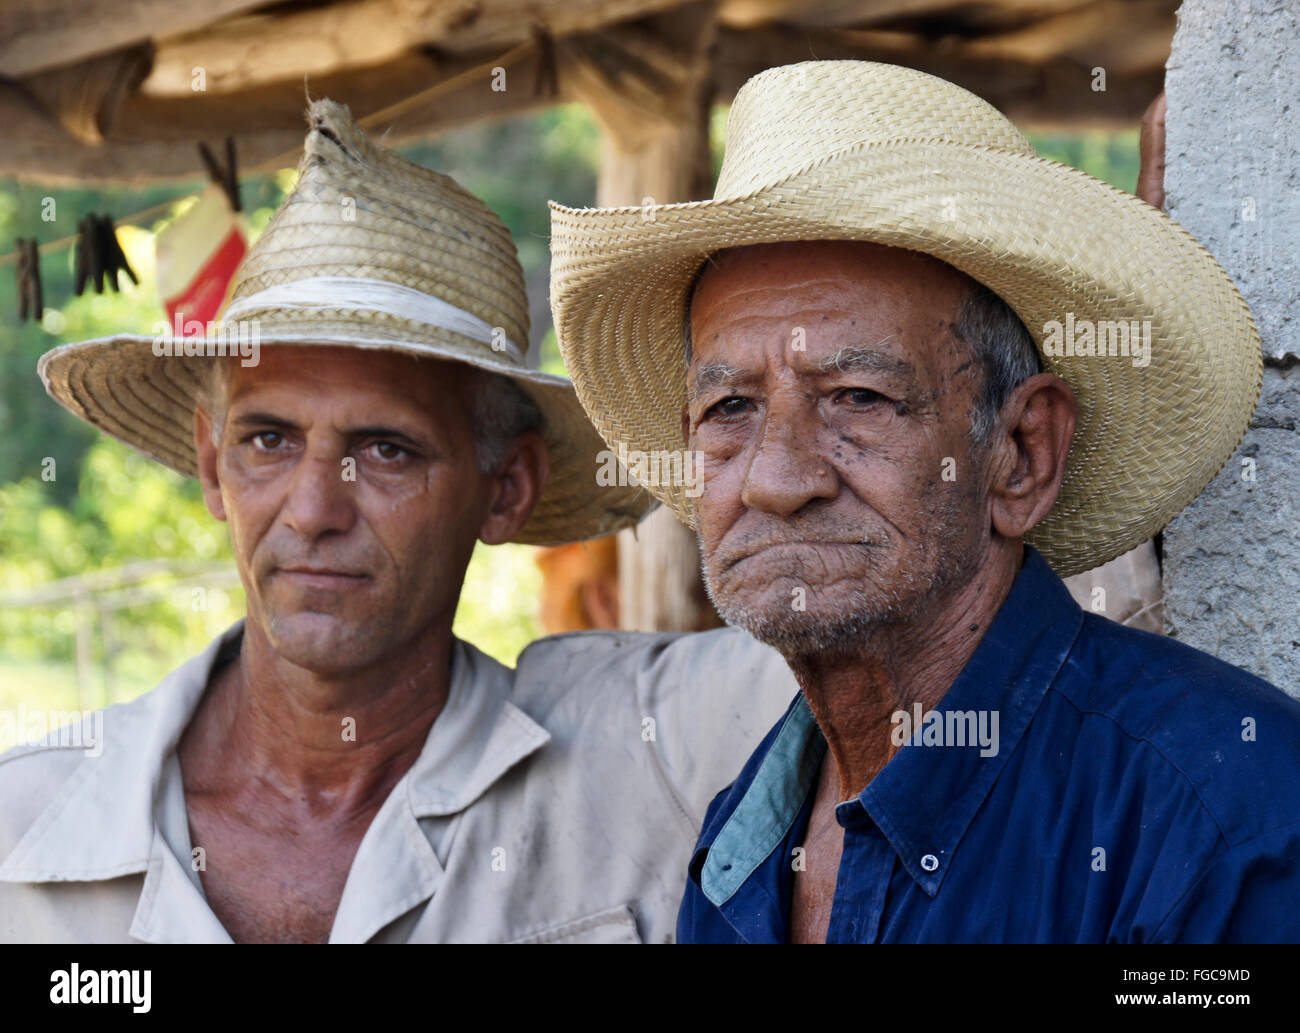 Bauern aus dem Valle de Los Ingenios (Tal der Zuckerfabriken), Trinidad, Kuba Stockfoto